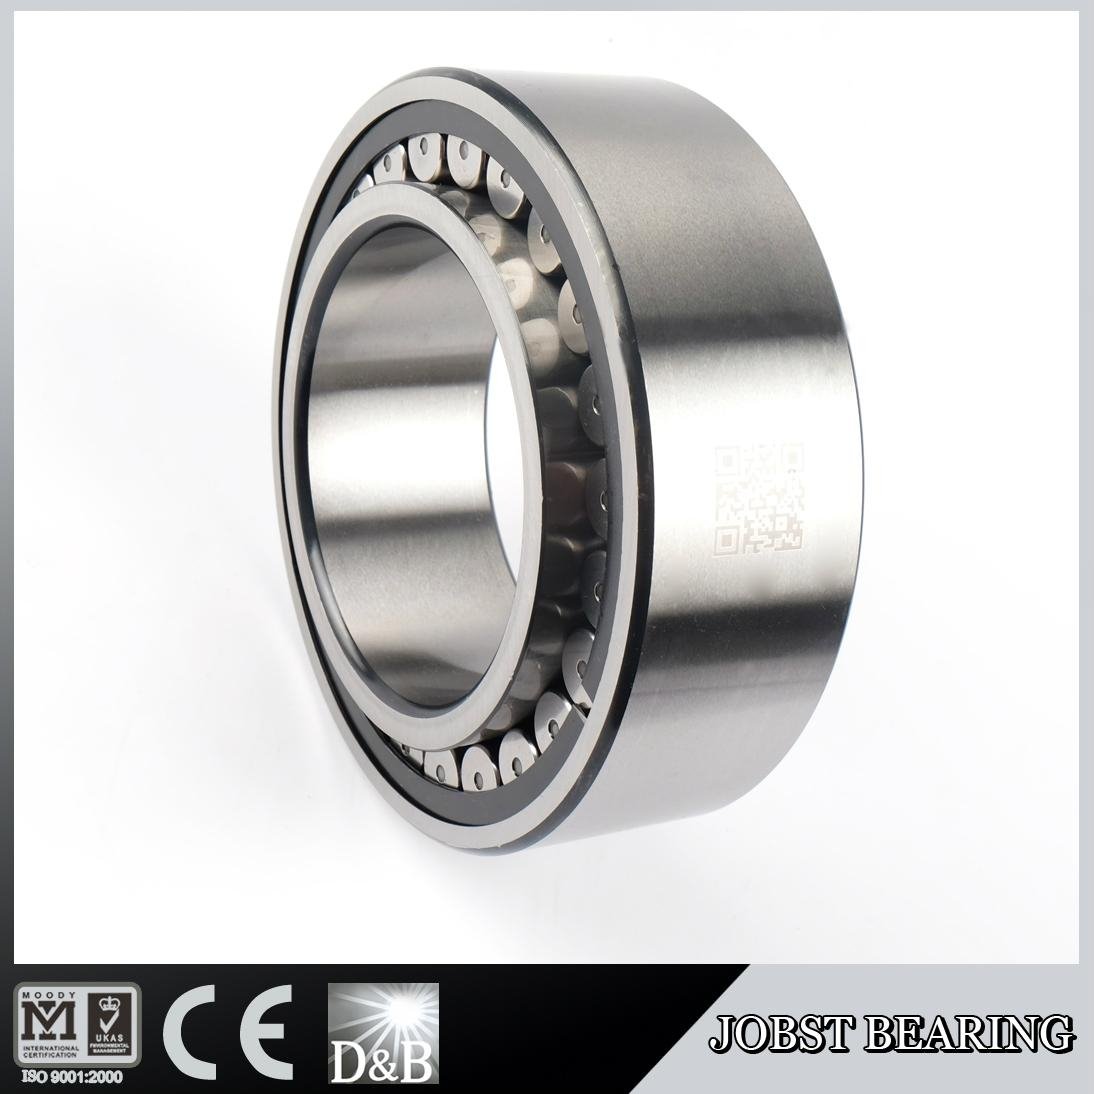 2013 new bearing! China bearing manufacture! CARB Toroidal roller bearing c3120 